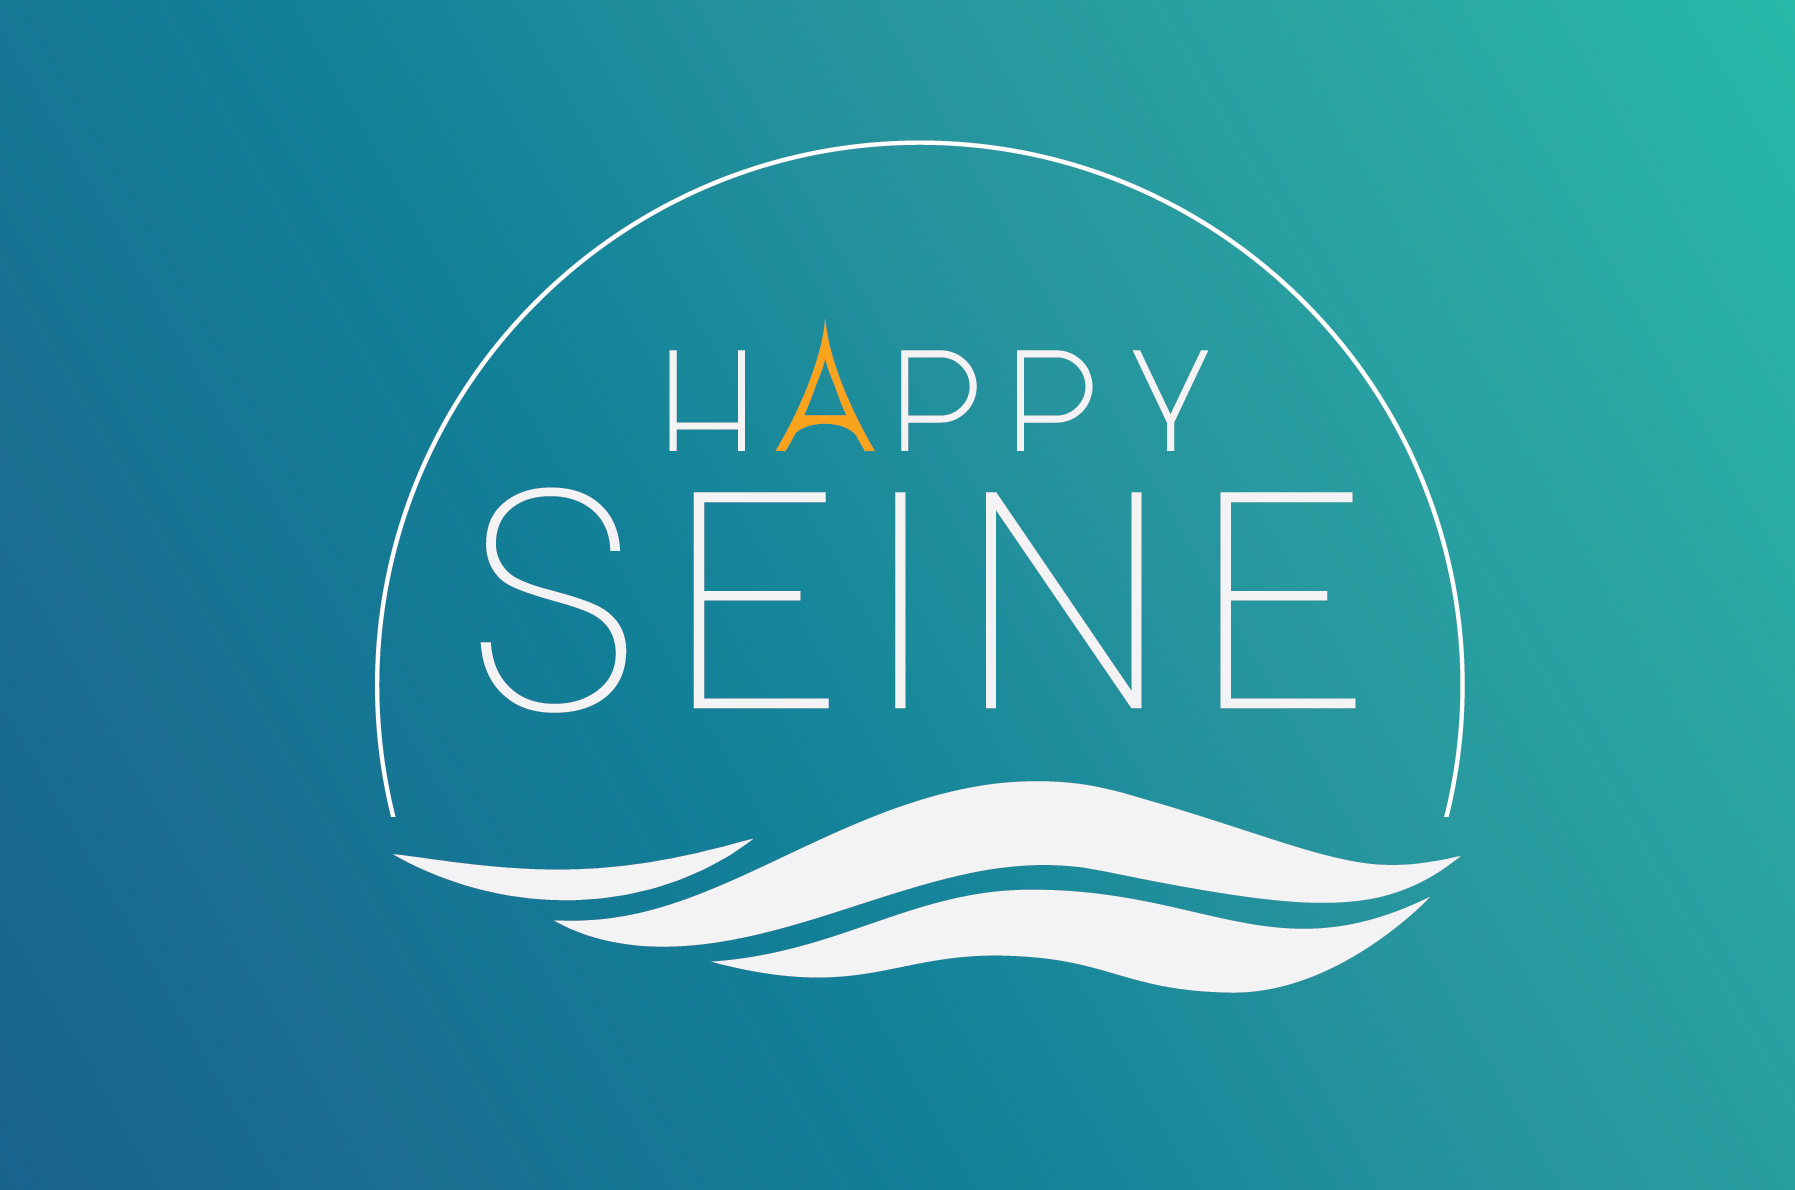 Happy Seine Logo - River / Water Design